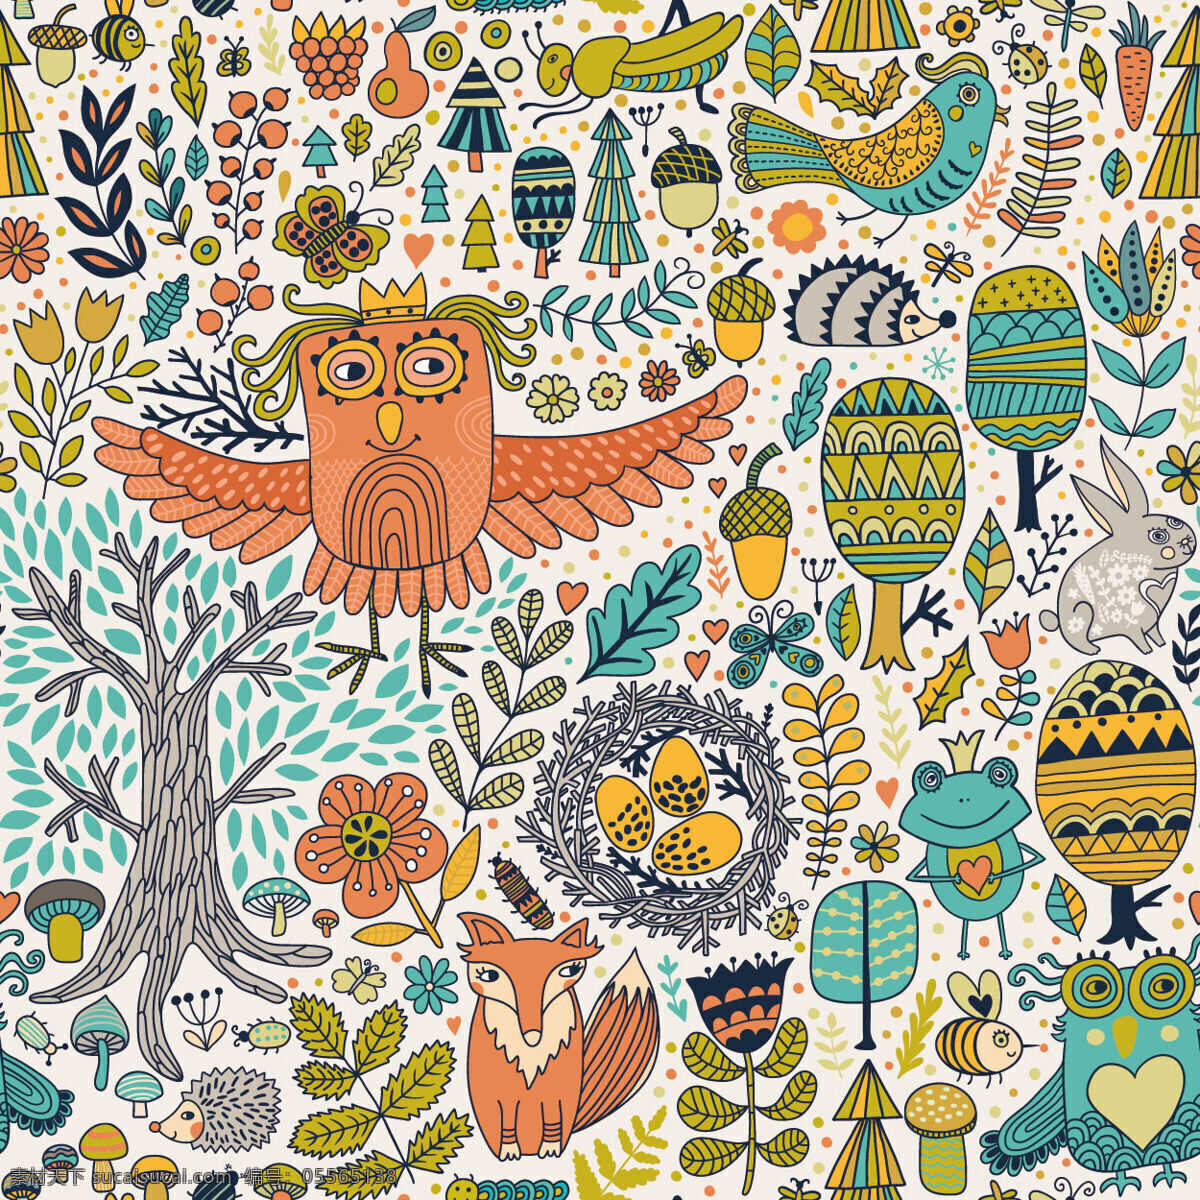 插画 风格 手绘 动植物 壁纸 图案 装饰设计 大树 壁纸图案 青蛙王子 树叶 猫头鹰